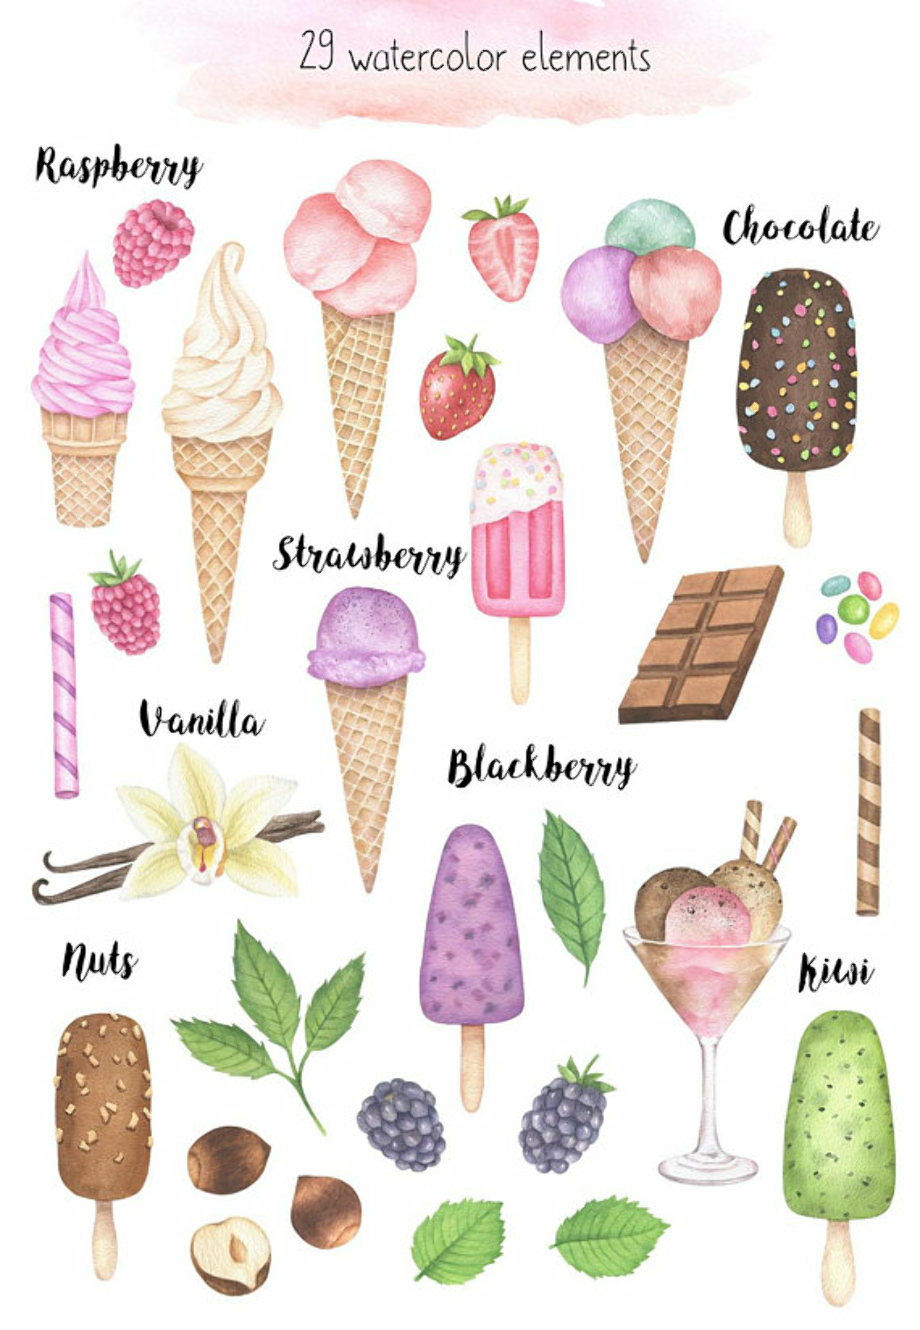 Ice cream cone watercolor